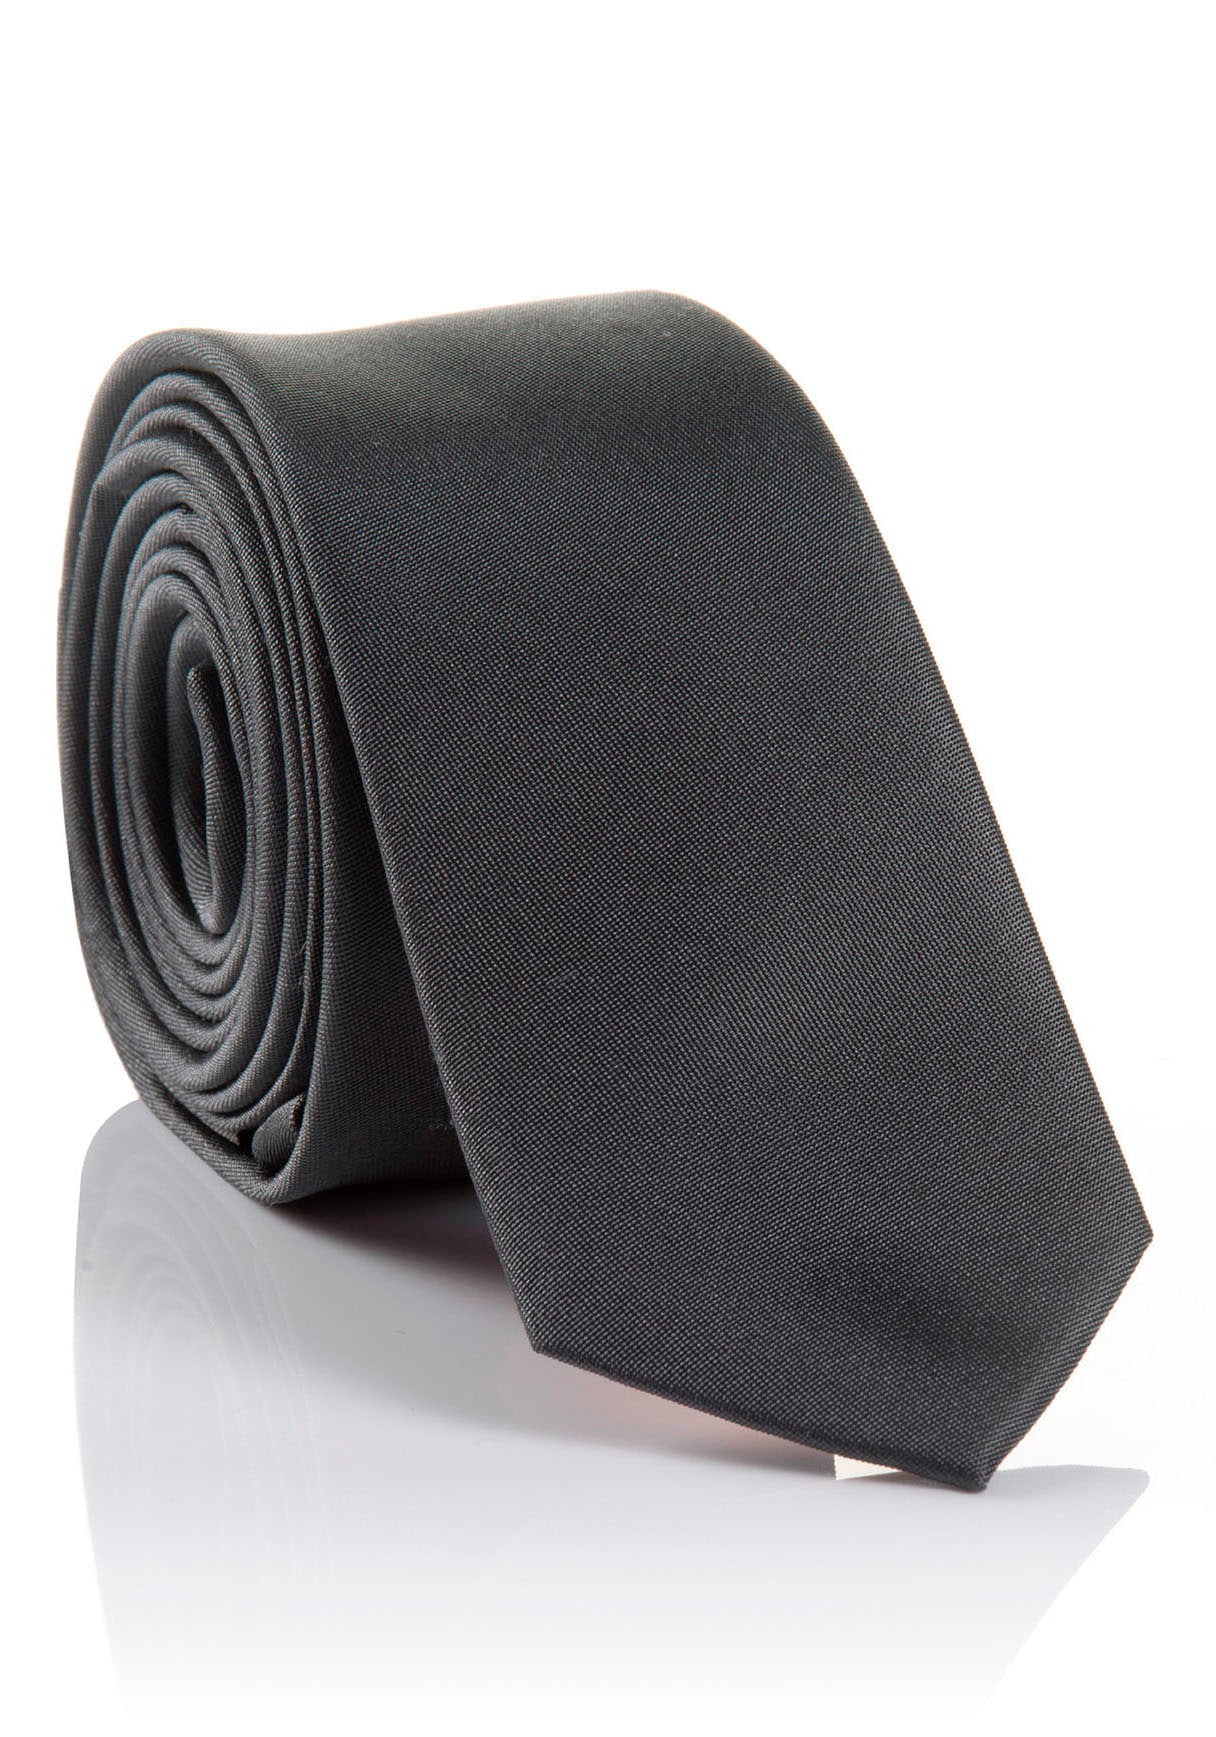 ➤ Krawatten versandkostenfrei - ohne Mindestbestellwert kaufen